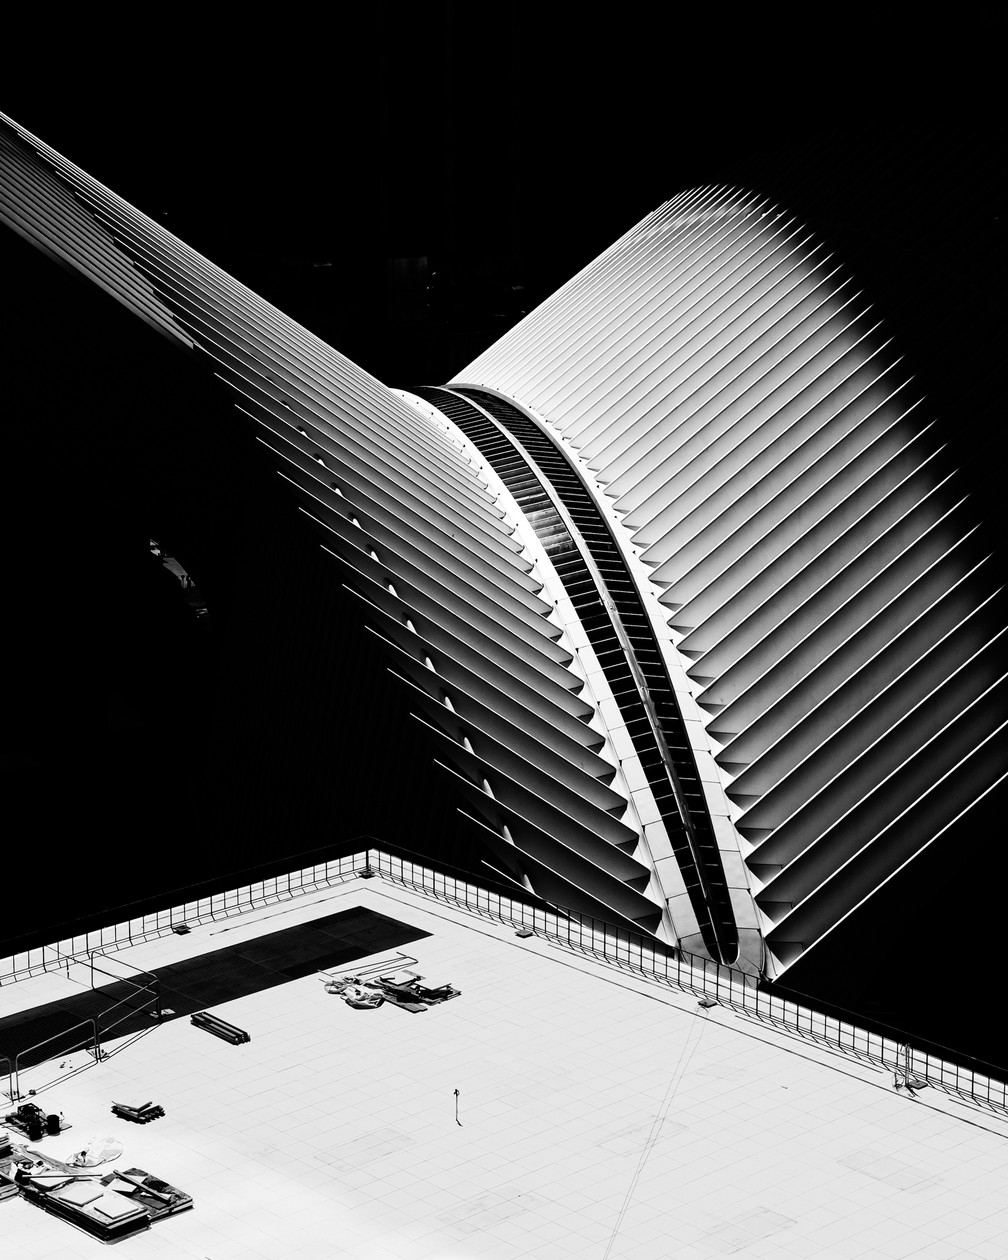 'Oculus' de Akira P., ficou com o 2º lugar na categoria 'Arquitetura'. Foto tirada em Nova York — Foto: Akira P./iPhone Photography Awards